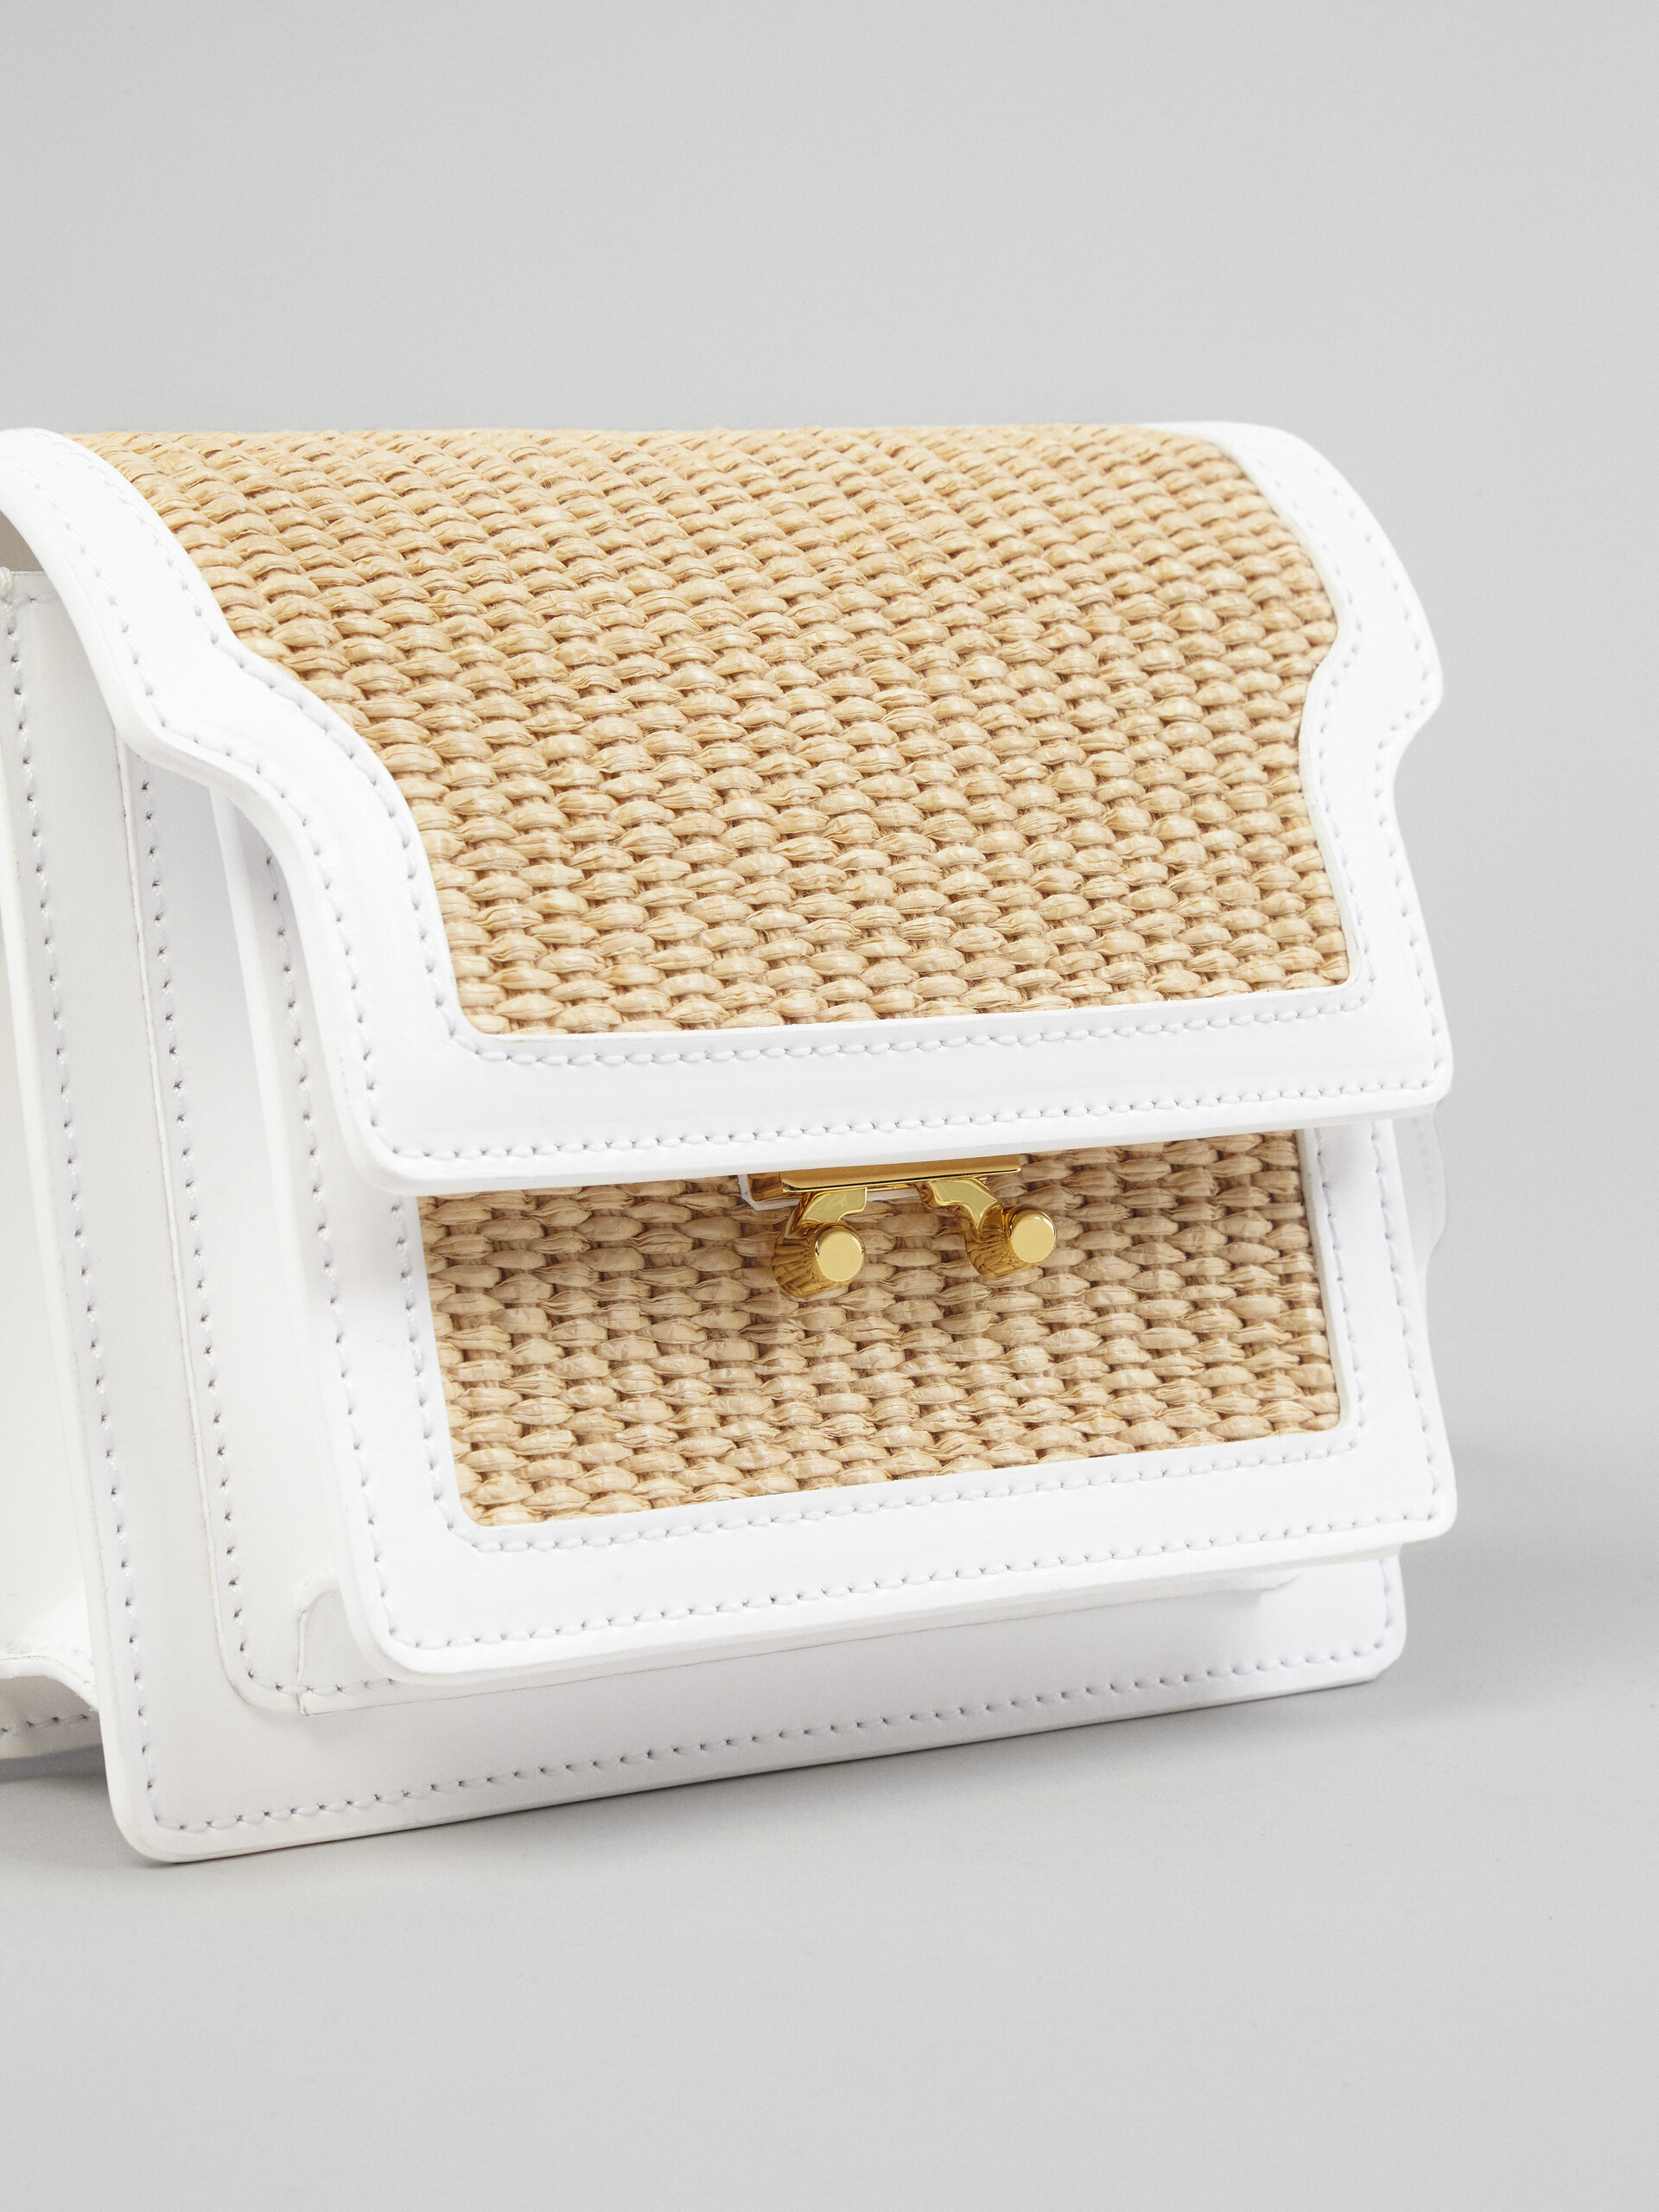 TRUNK SOFT bag mini in pelle bianca e rafia - Borse a spalla - Image 3